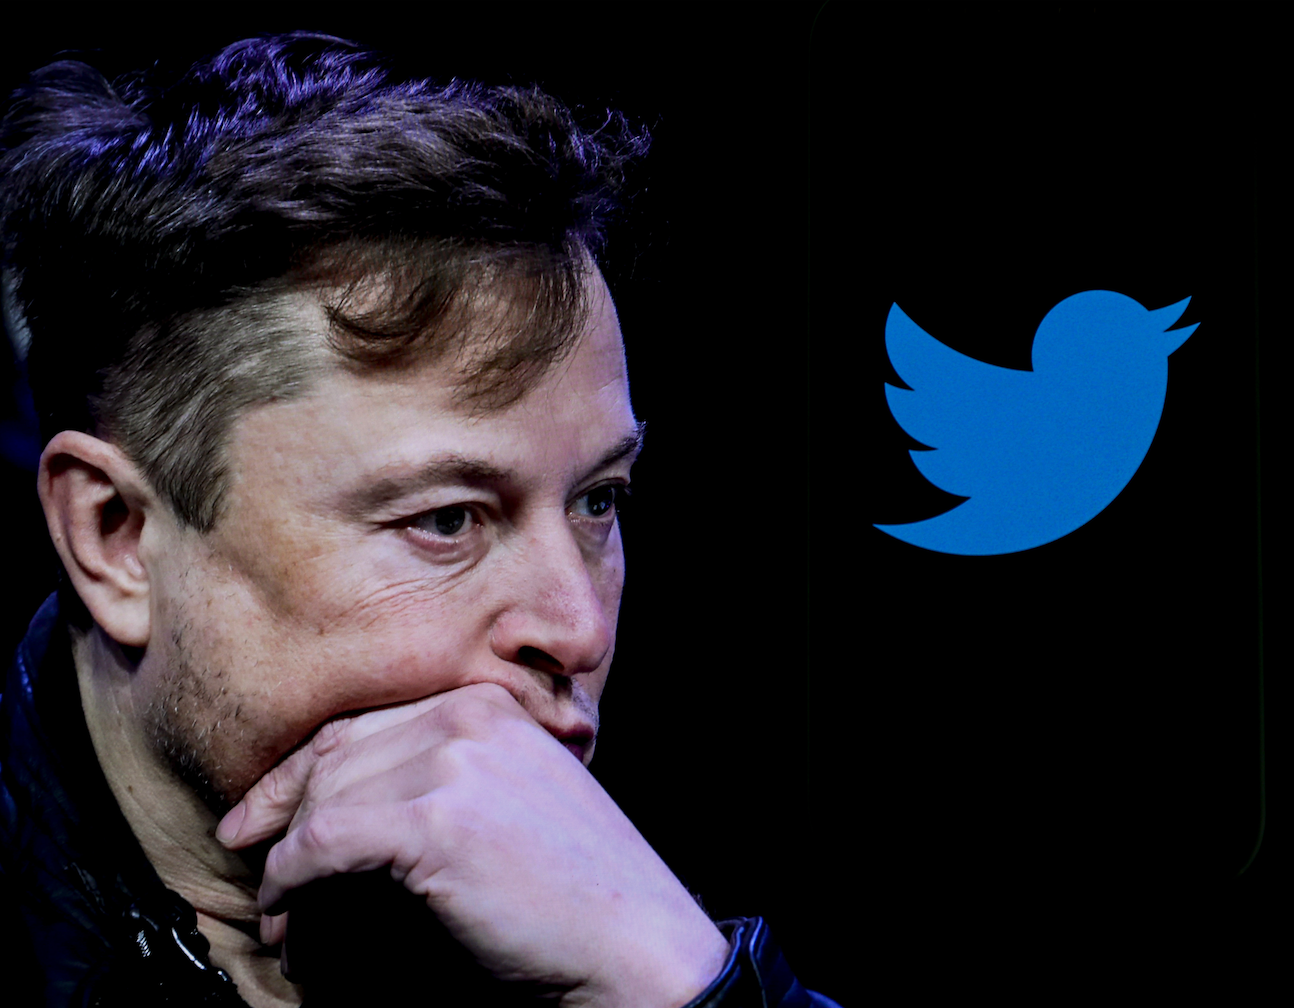 Fremtiden for Elons Twitter kan byde på meget forskelligt. Mest sandsynligt: meget større åbenhed. Flere fake news. Flere trolde. Men også færre bots. Færre fattige brugere. Mere hatespeech. Mere Musk selv. Alt i alt: ikke godt. Billede: Getty Images